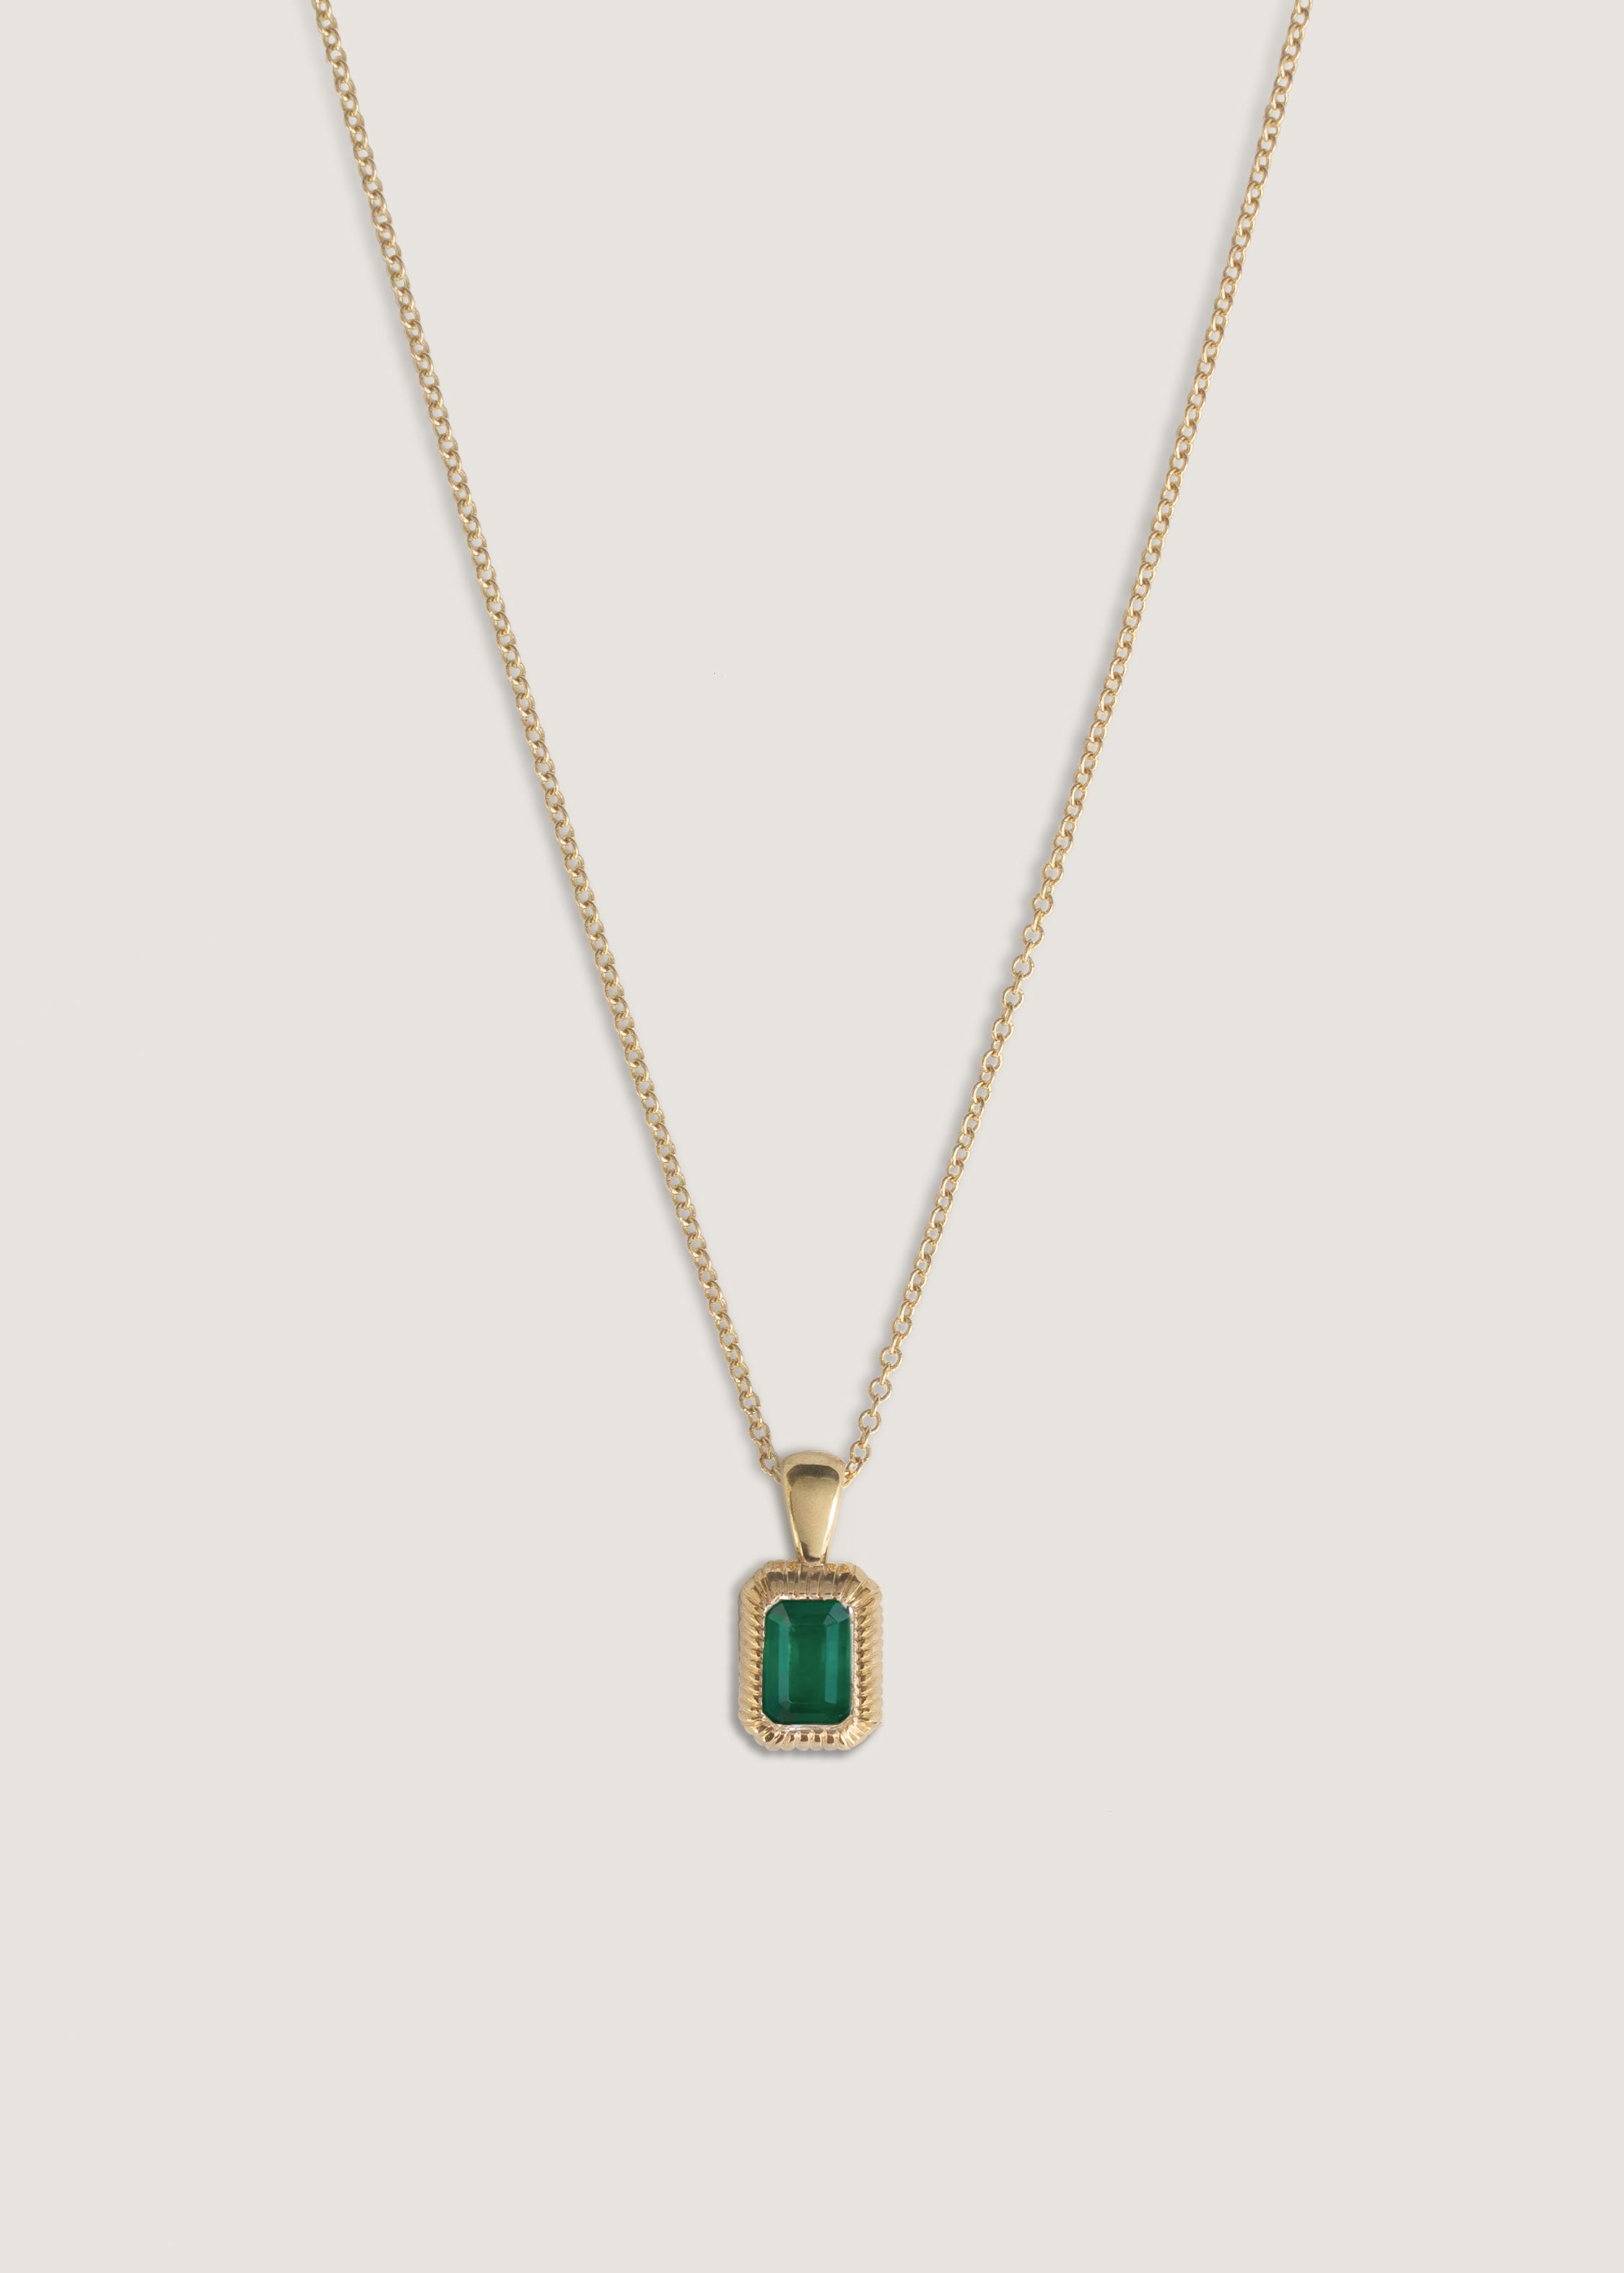 alt="Lyra Baguette Pendant Emerald"